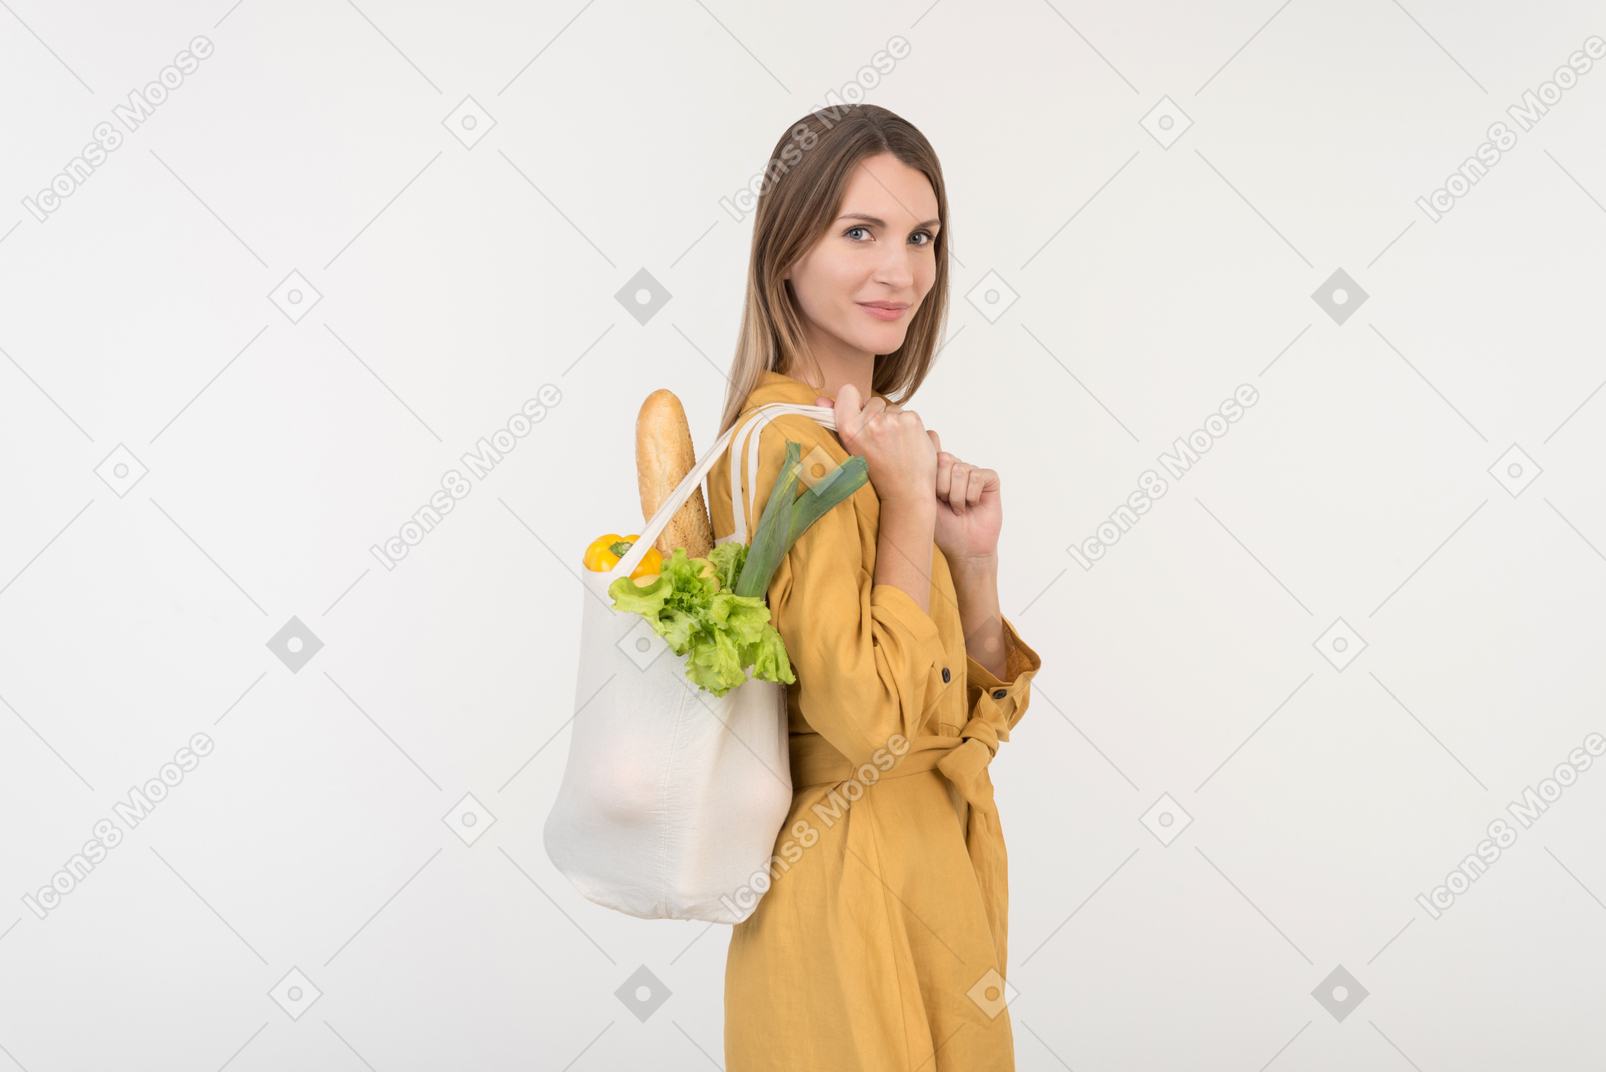 야채와 함께 쇼핑 가방을 들고 아래를 내려다 보면서 젊은 여자